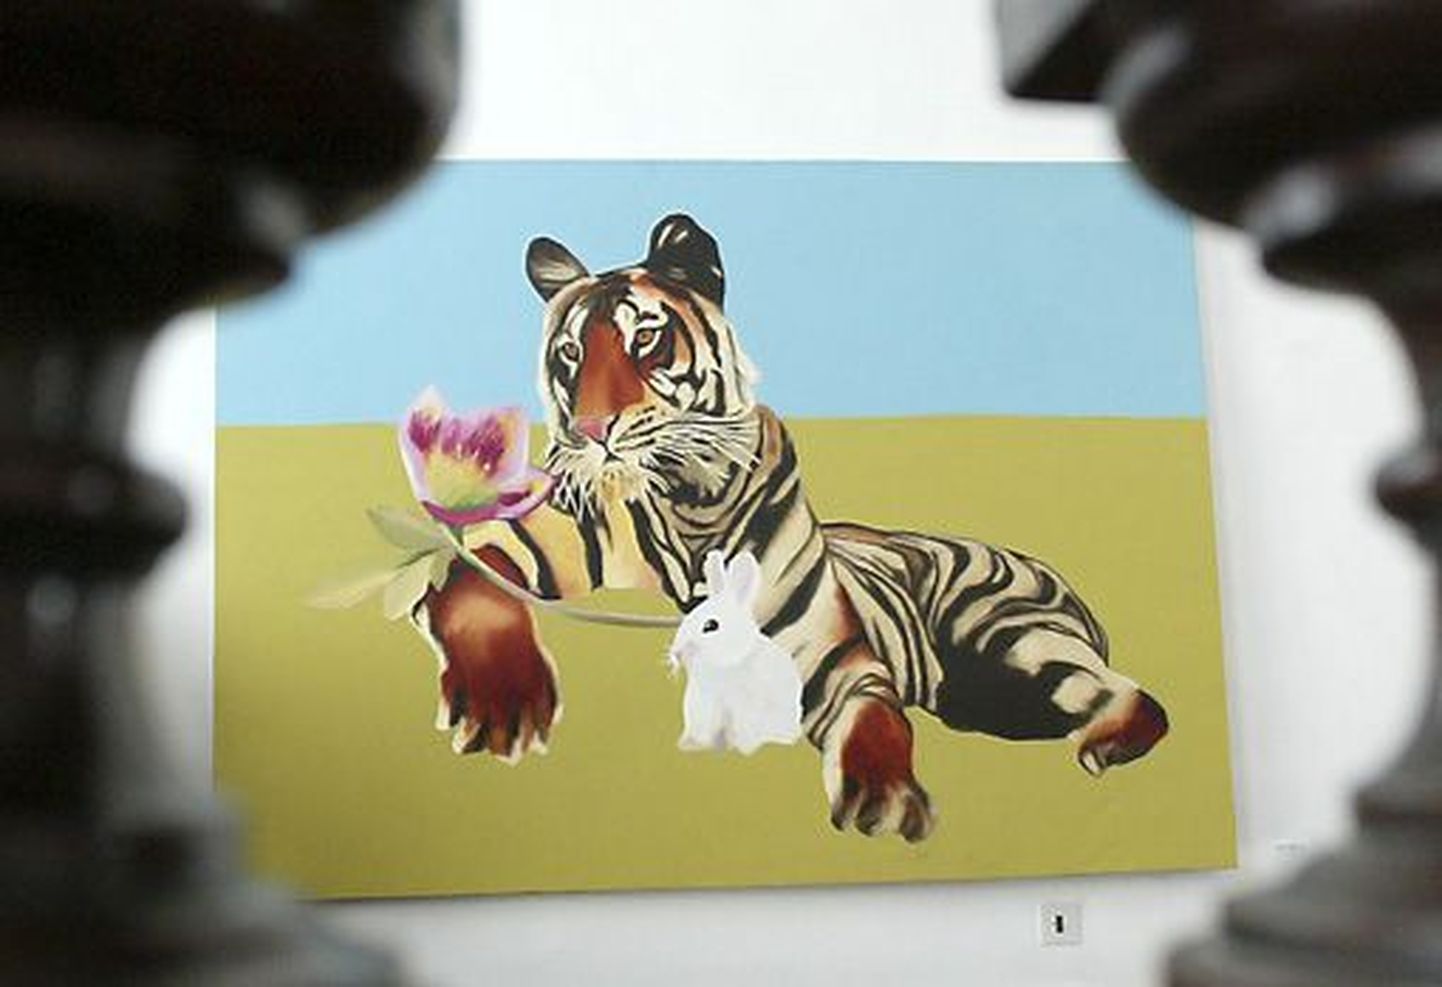 Juba trepil tervitab näitusele tulijat Merike Estna maalitud soe ja südamlik tiiger.